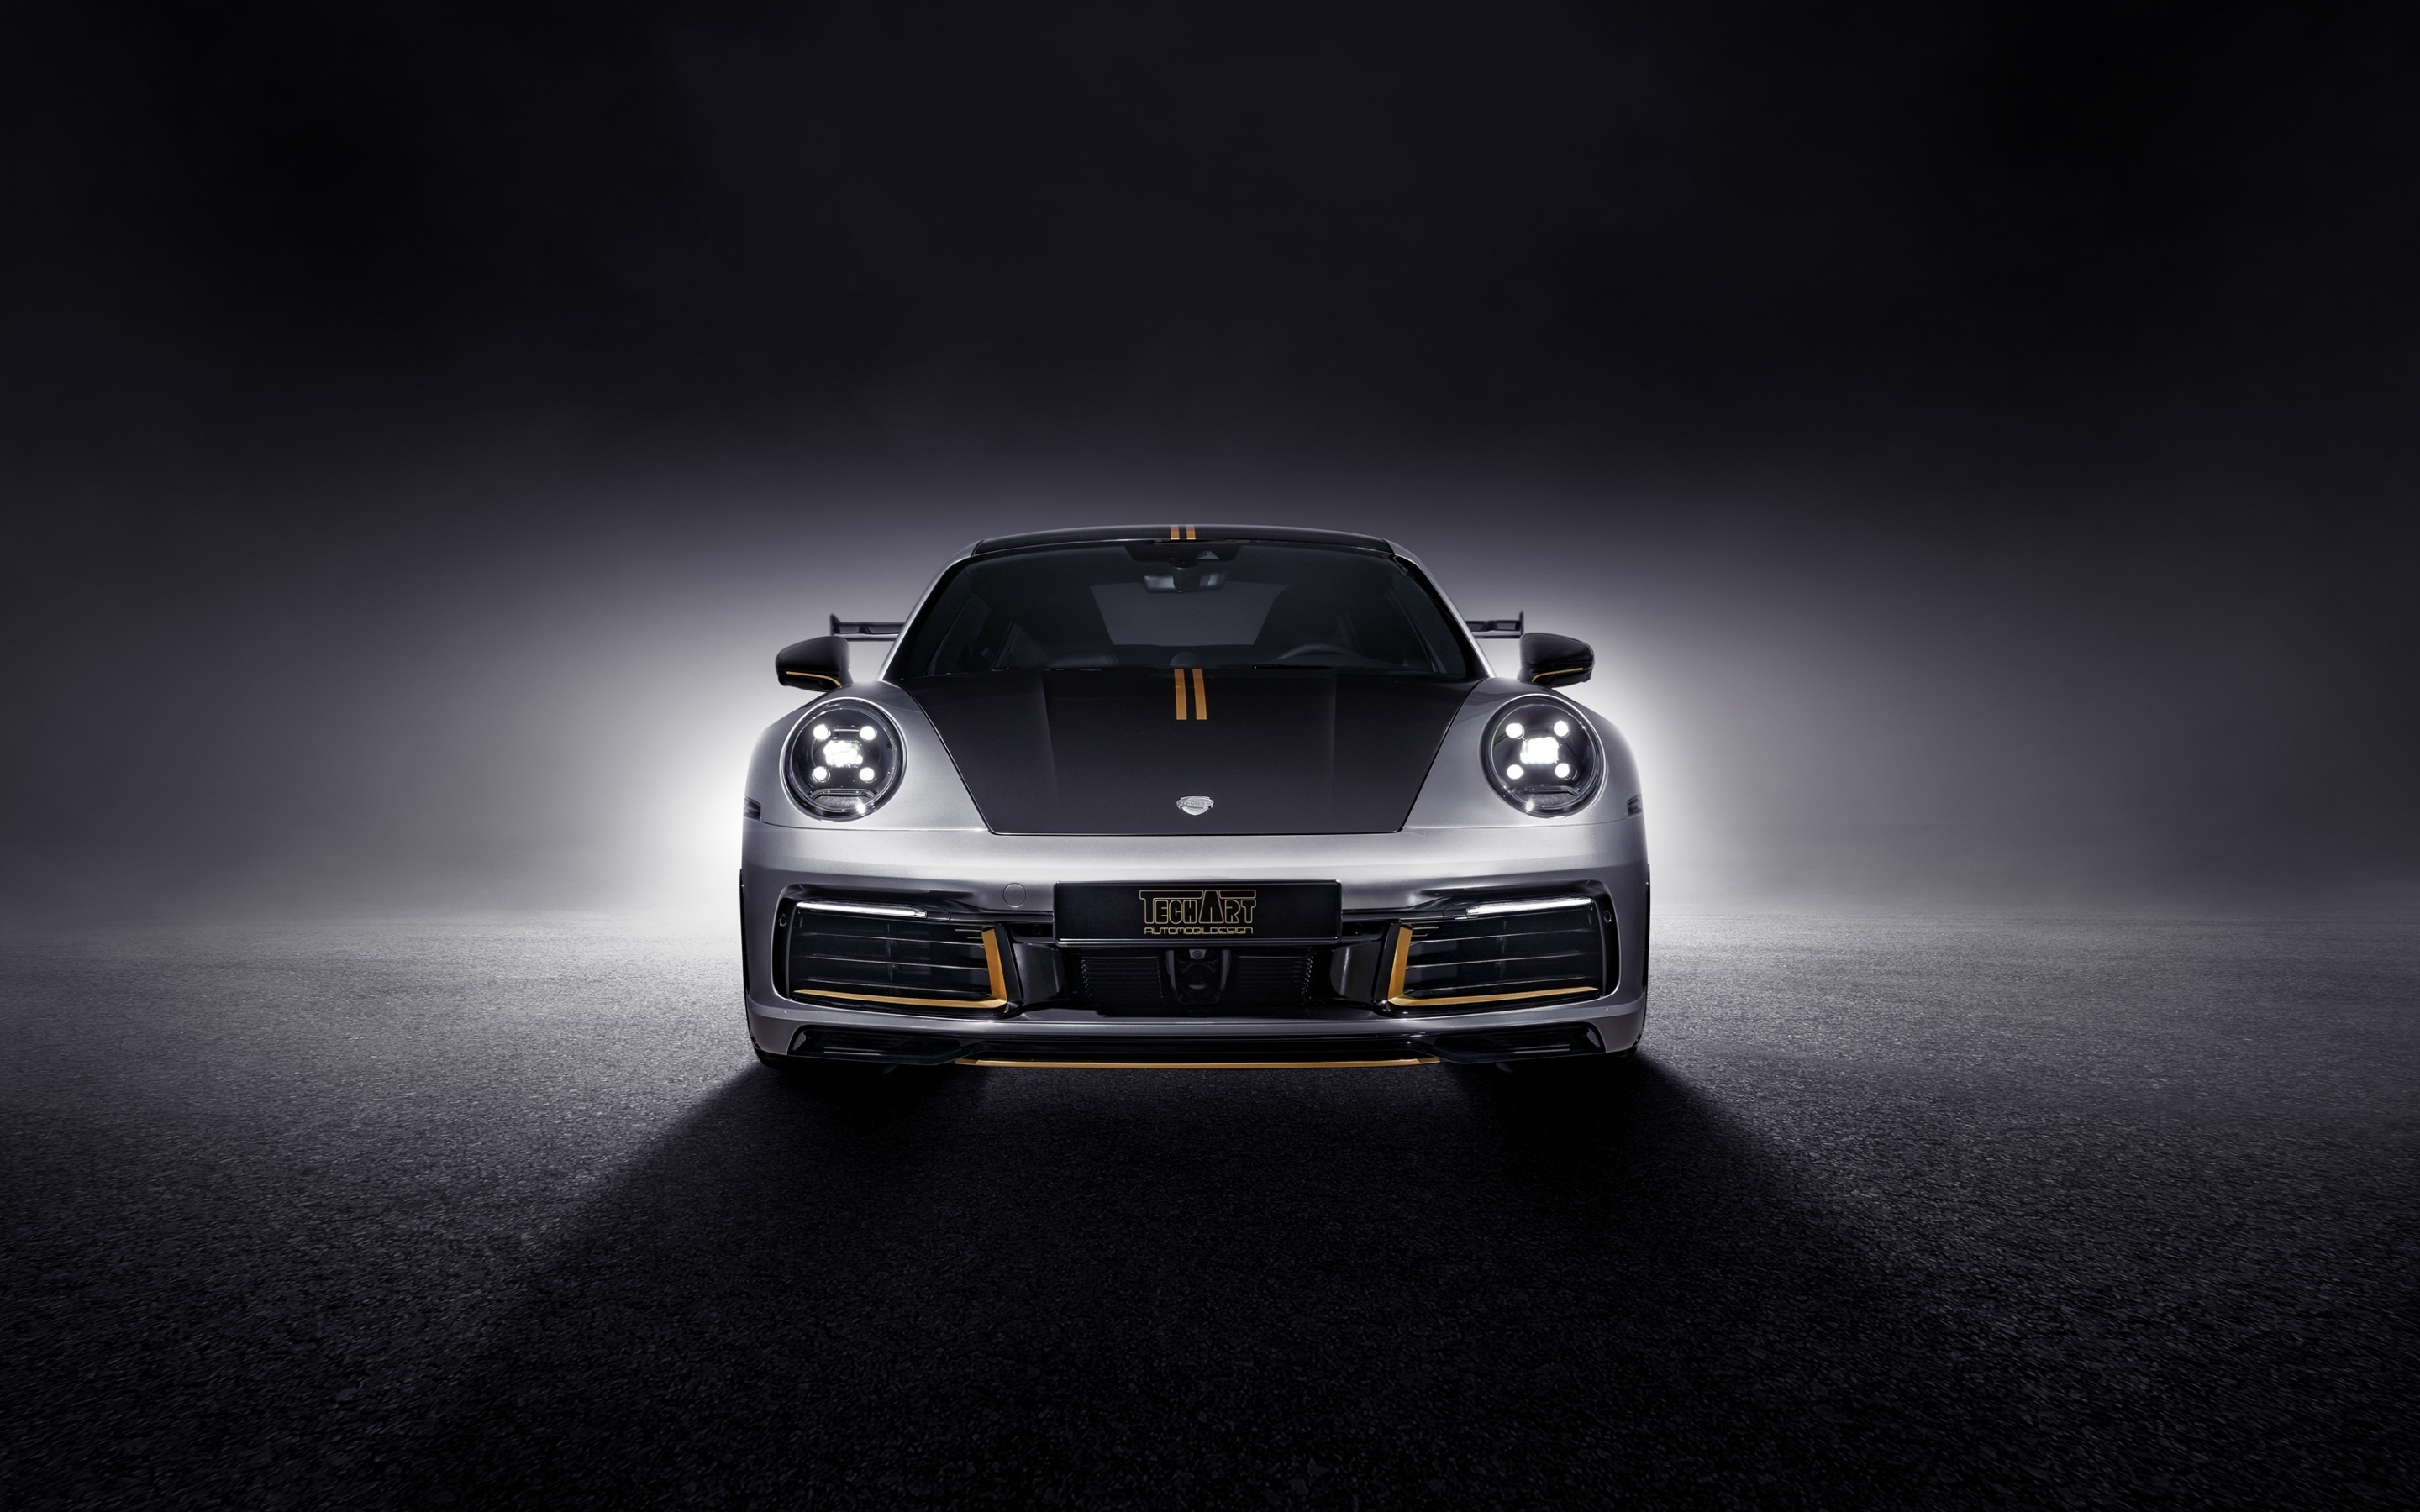 Porsche 911 Carrera Tech Art, front-view, 2019, 2880x1800 wallpaper